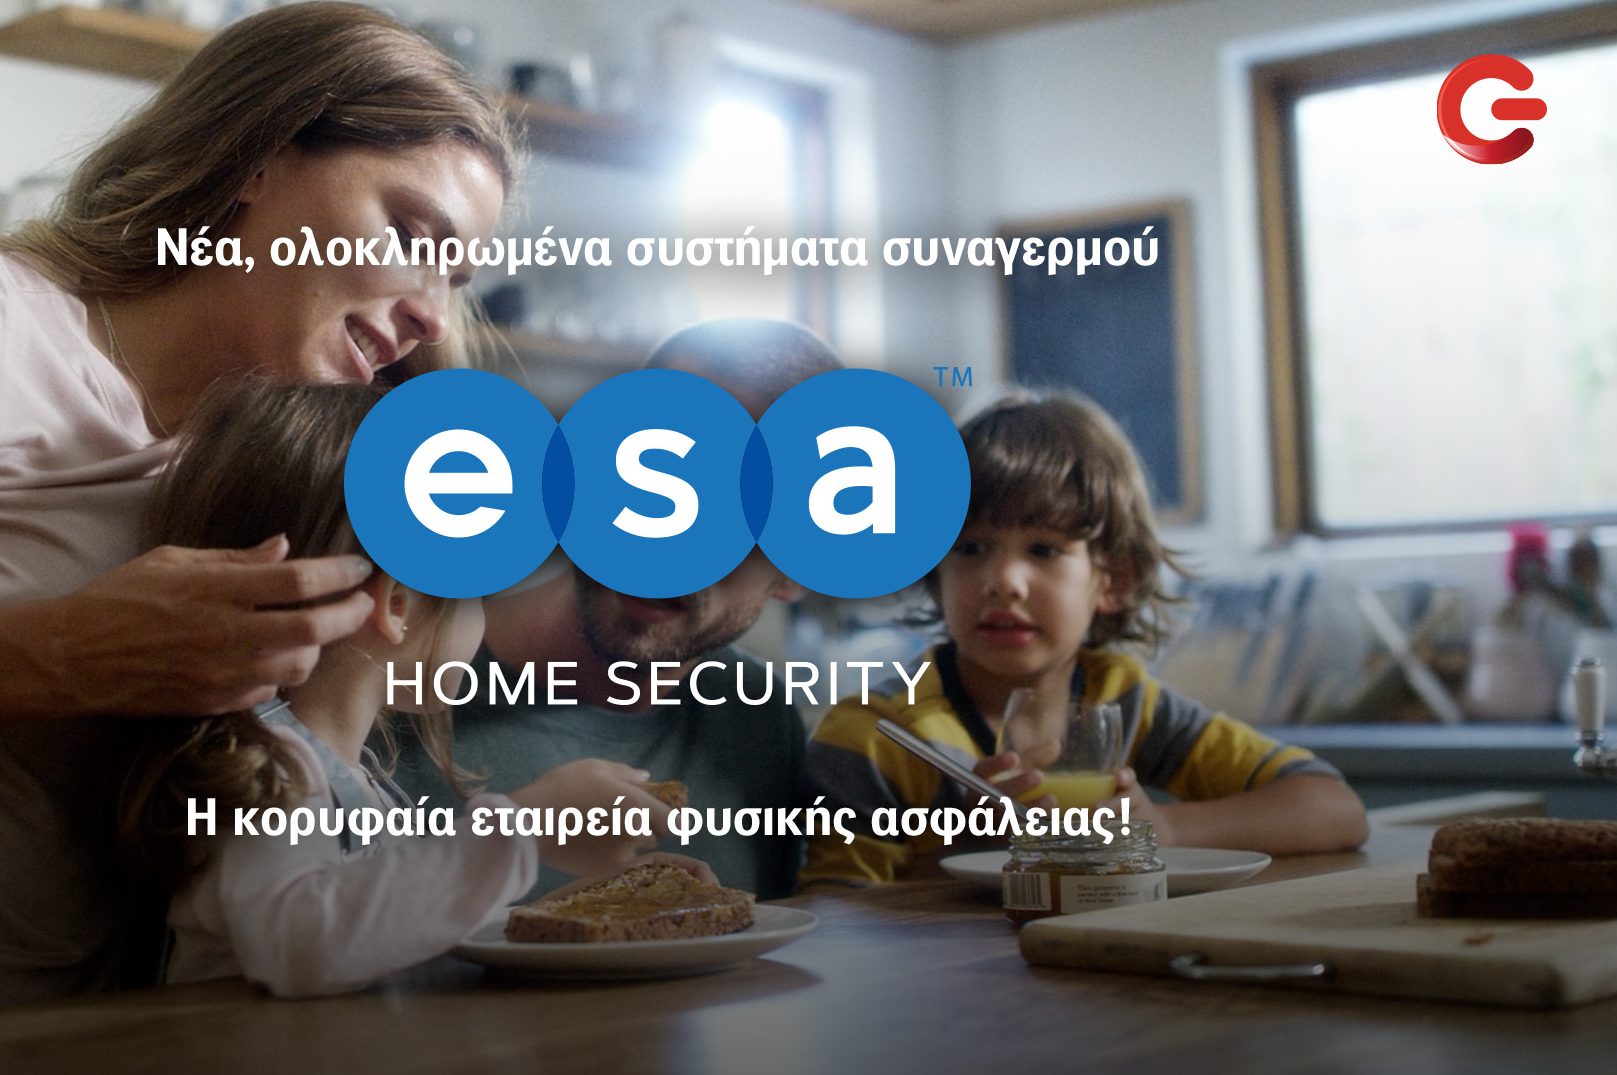 Τα ολοκληρωμένα συστήματα συναγερμού ESA Home Security αποκλειστικά σε ΓΕΡΜΑΝΟ και COSMOTE